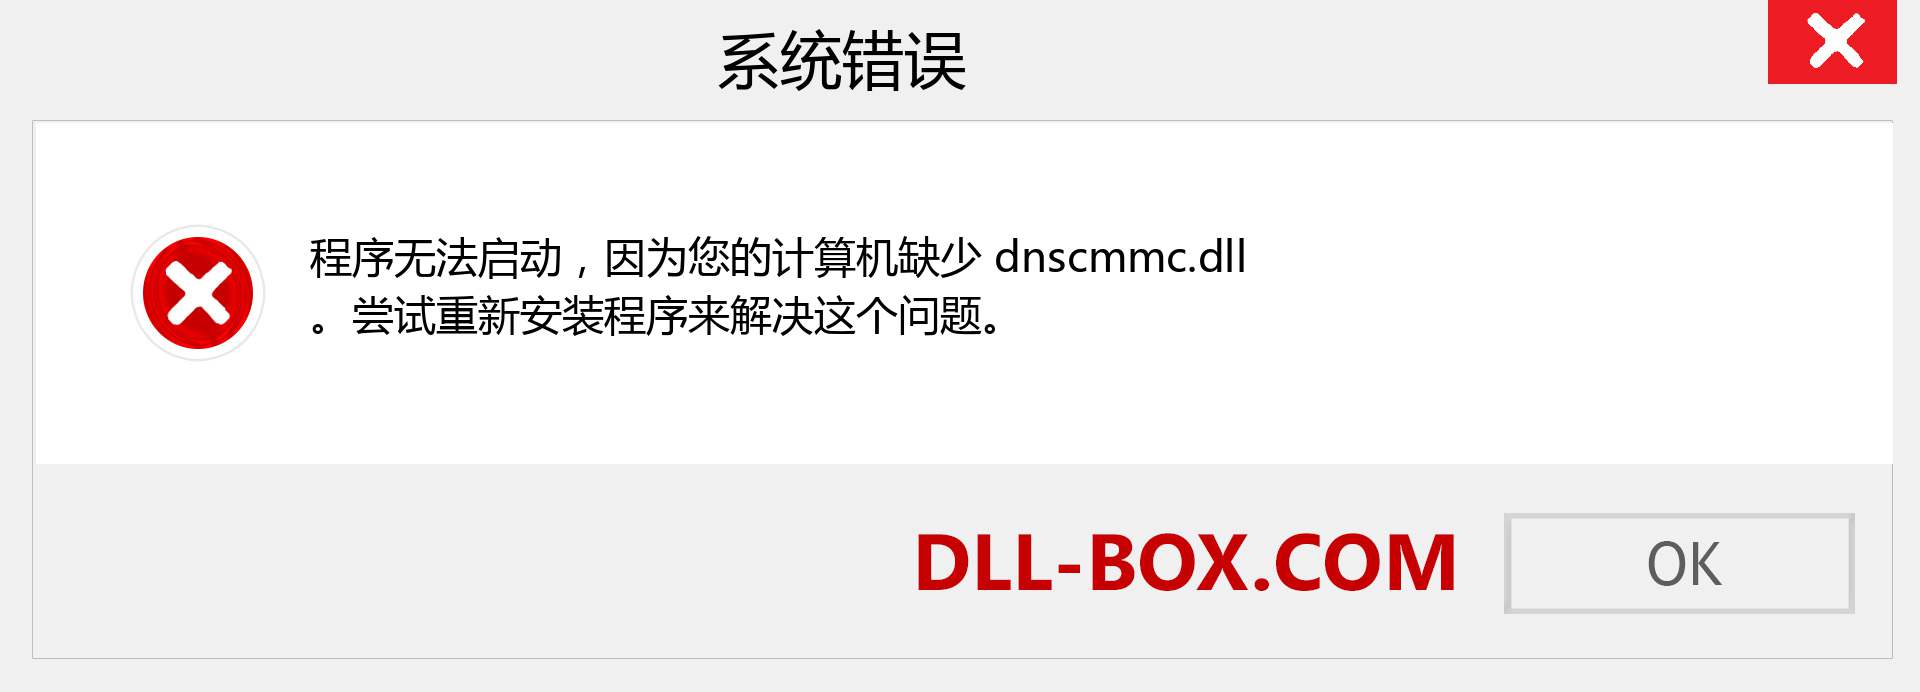 dnscmmc.dll 文件丢失？。 适用于 Windows 7、8、10 的下载 - 修复 Windows、照片、图像上的 dnscmmc dll 丢失错误